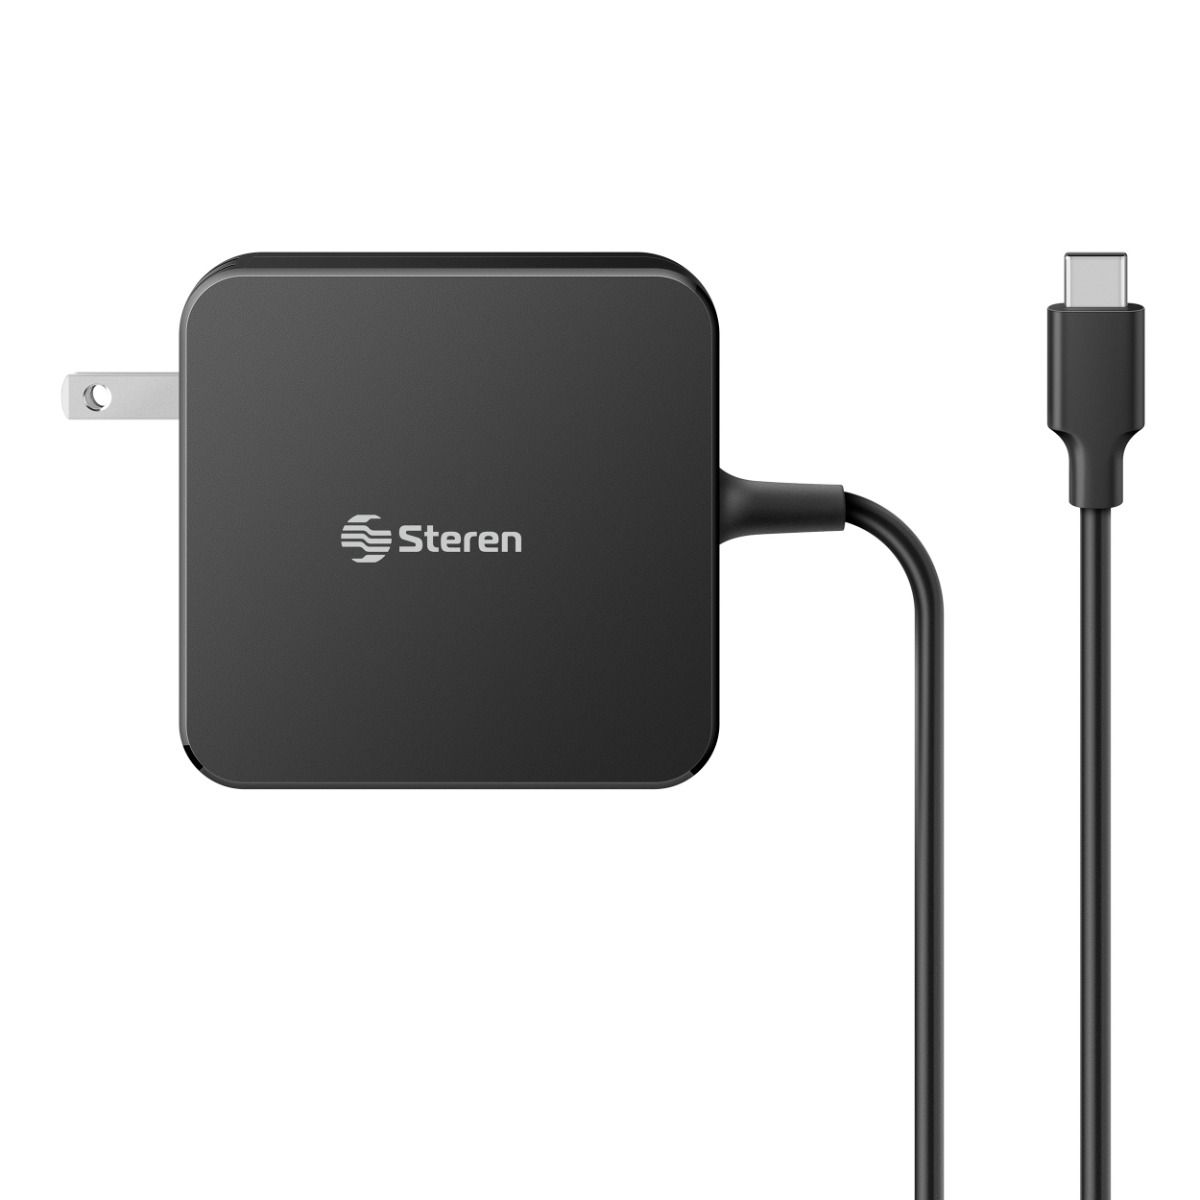  Cargador USB C Syncwire de 67 W, 2 puertos PD 3.0 USB C cargador  rápido con cable USB-C de 5.9 ft, cargador plegable de viaje para MacBook  Pro/Air, iPad Pro, iPhone